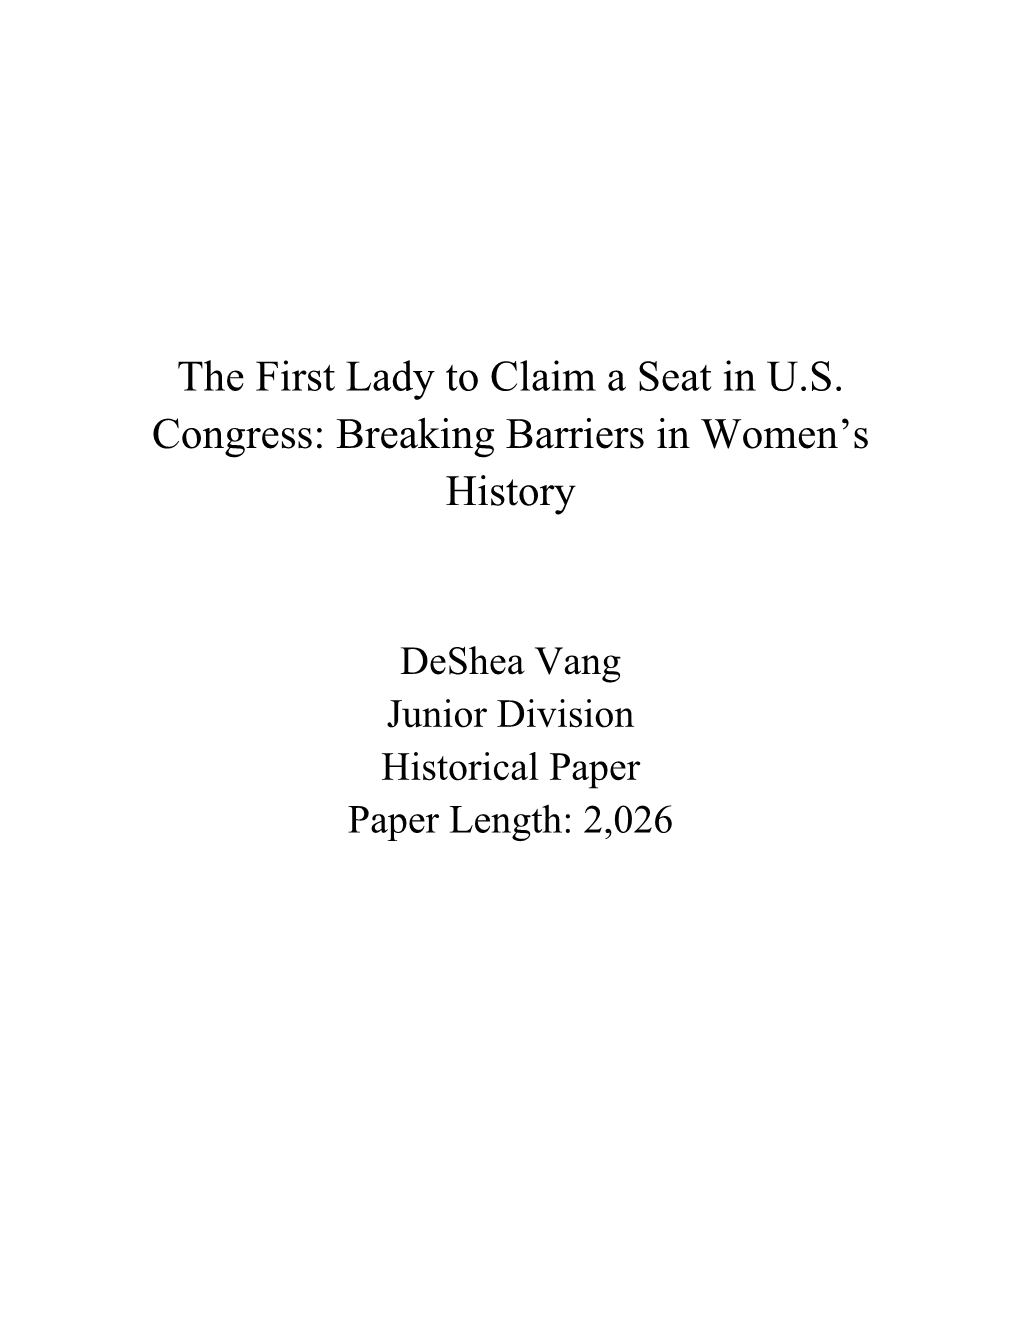 Breaking Barriers in Women's History